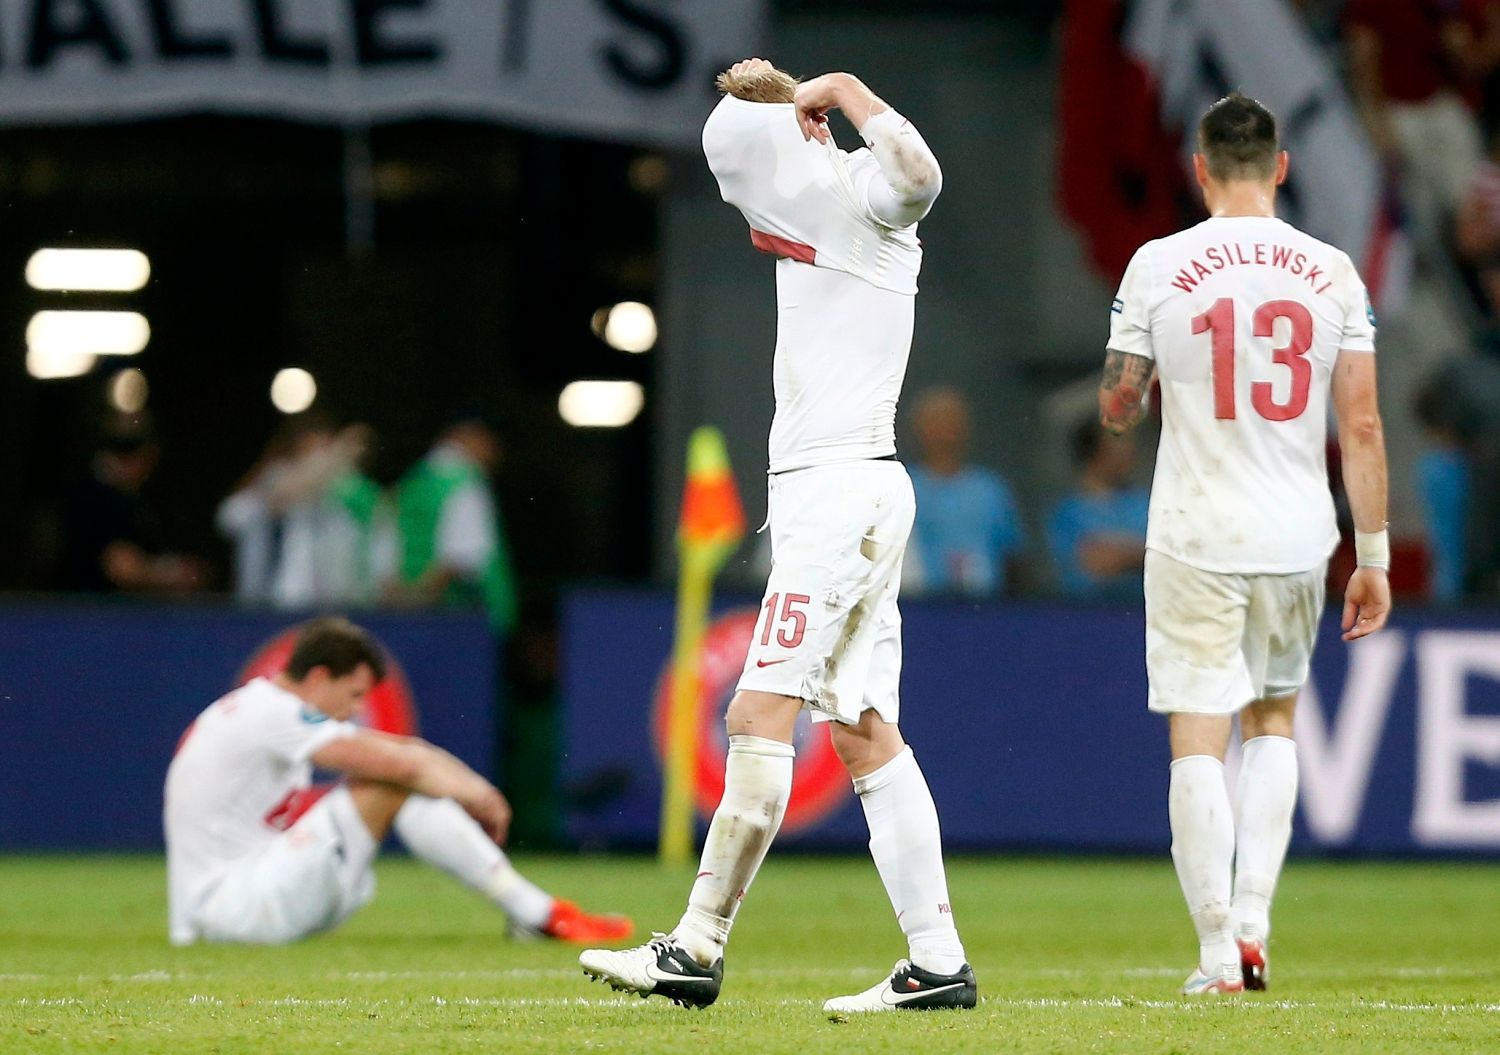 Polští fotbalisté Damien Perquis a Marcin Wasilewski jsou zklamaní po porážce s Českou republikou v utkání skupiny A na Euru 2012